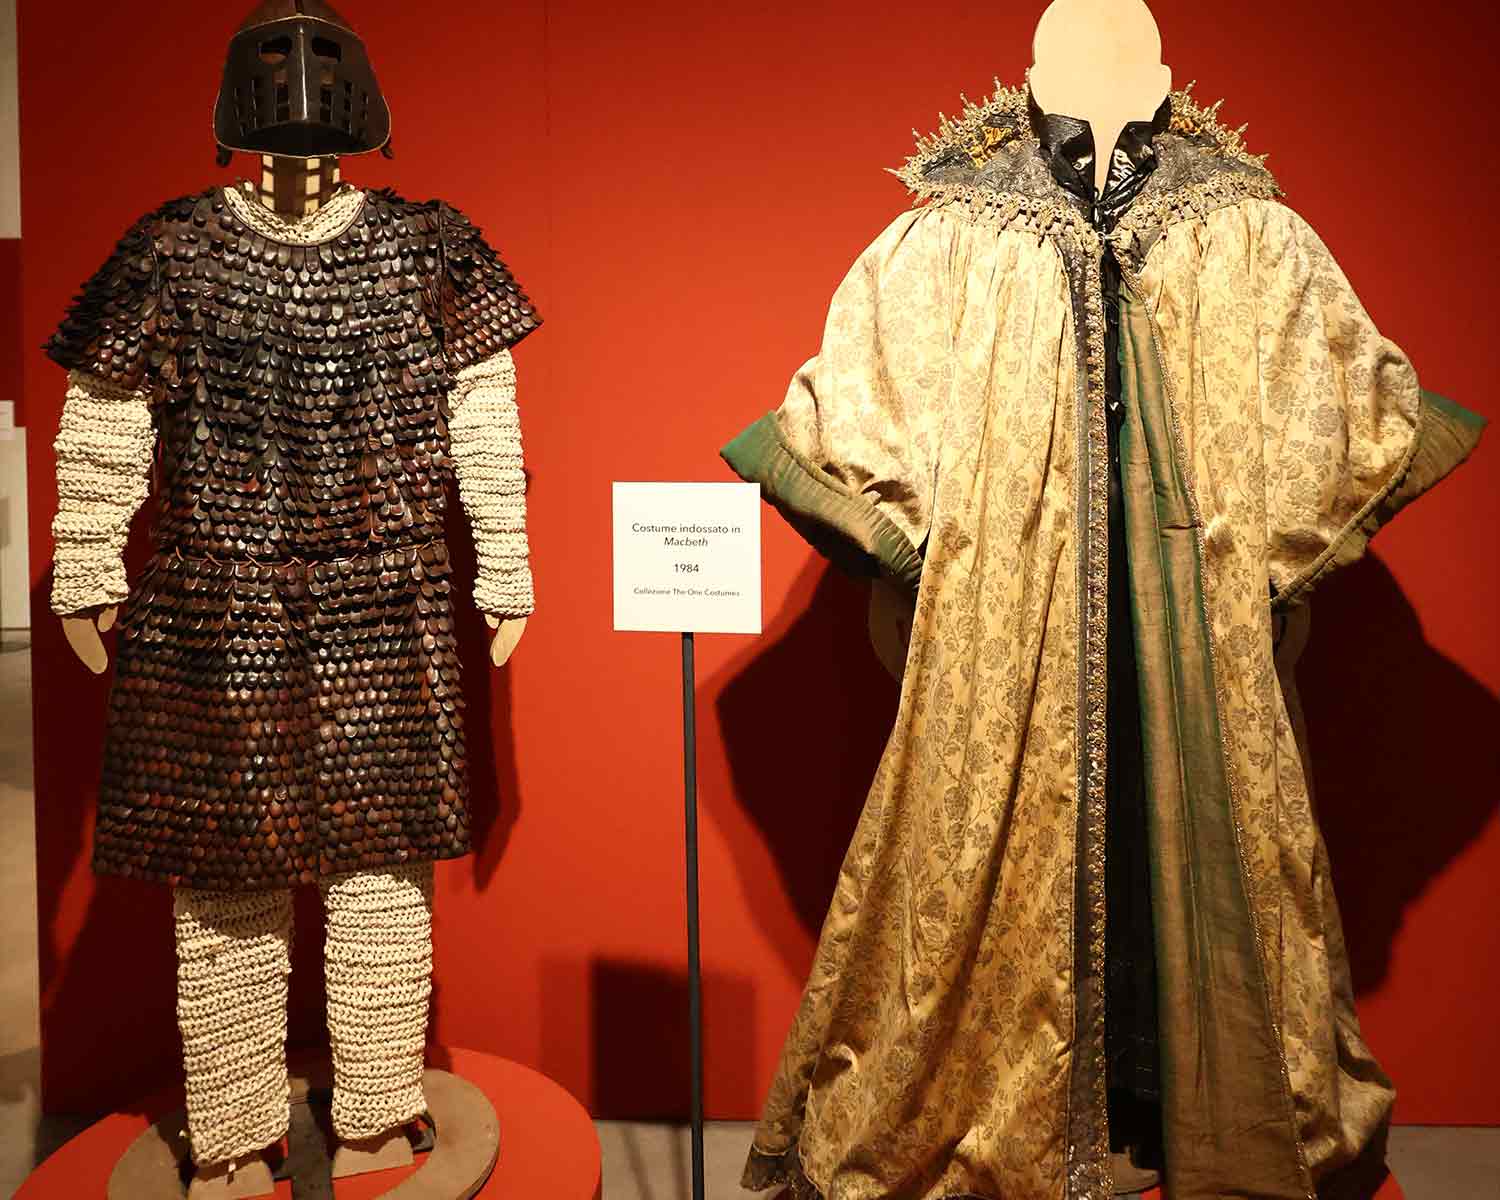 Costume indossato da Vittorio Gassman in Macbeth (1984) Collezione The One Costumes